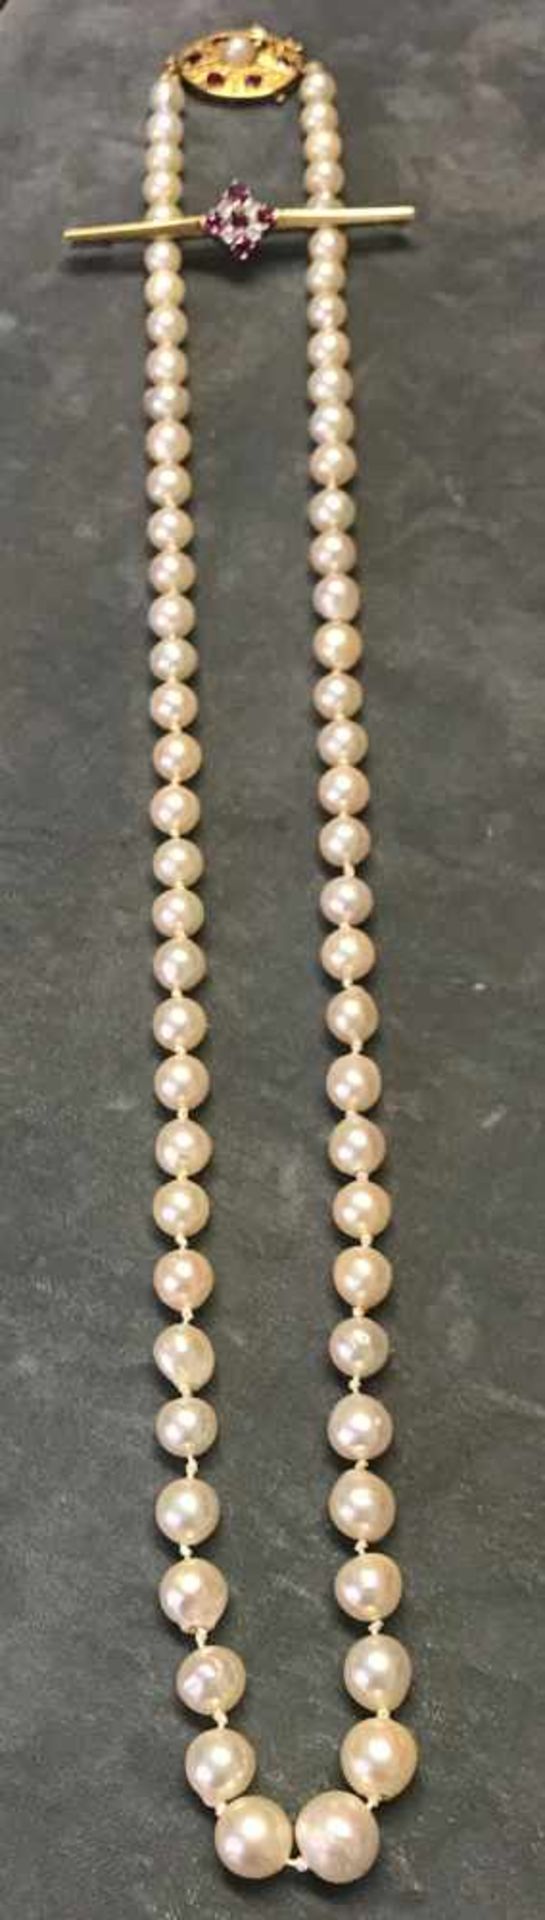 Perlenkette mit Rubinschloss, ovale Schließe mit 6 sehr schönen, hellroten Rubinen, mittig eine - Image 2 of 2